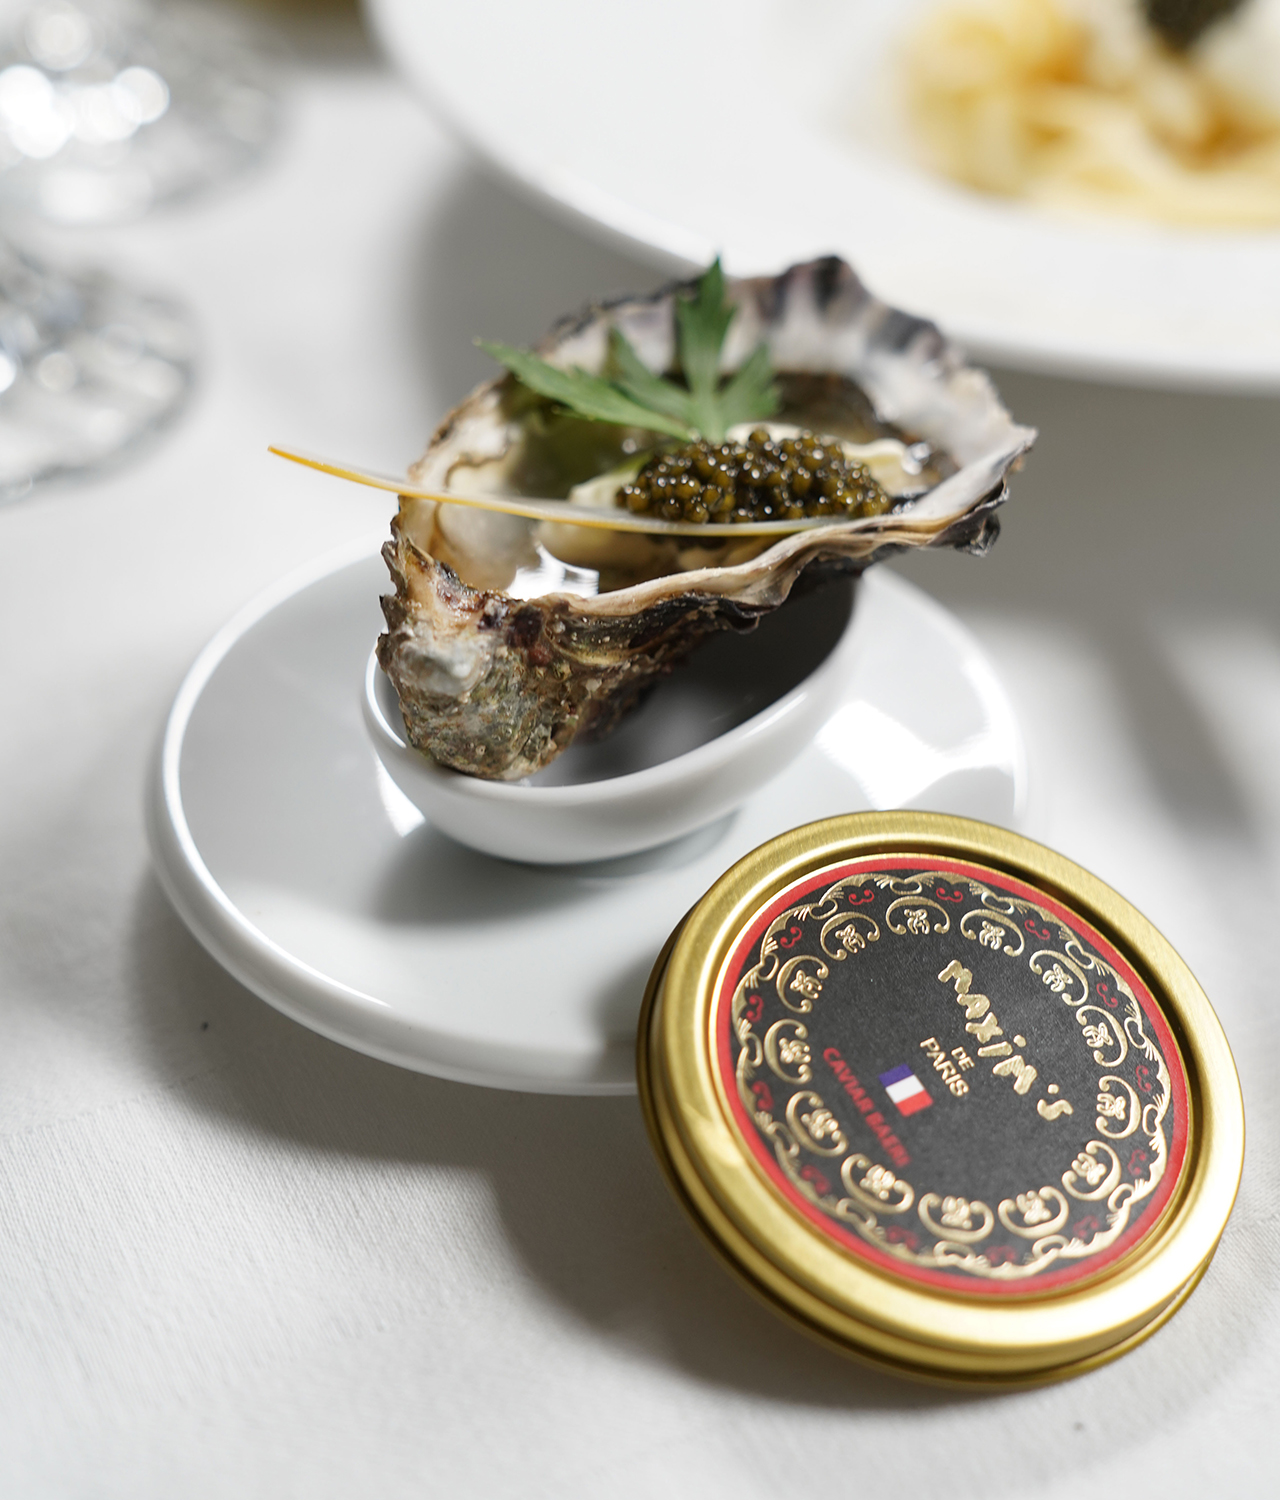 Caviar Osciètre - Caviar Maxim's